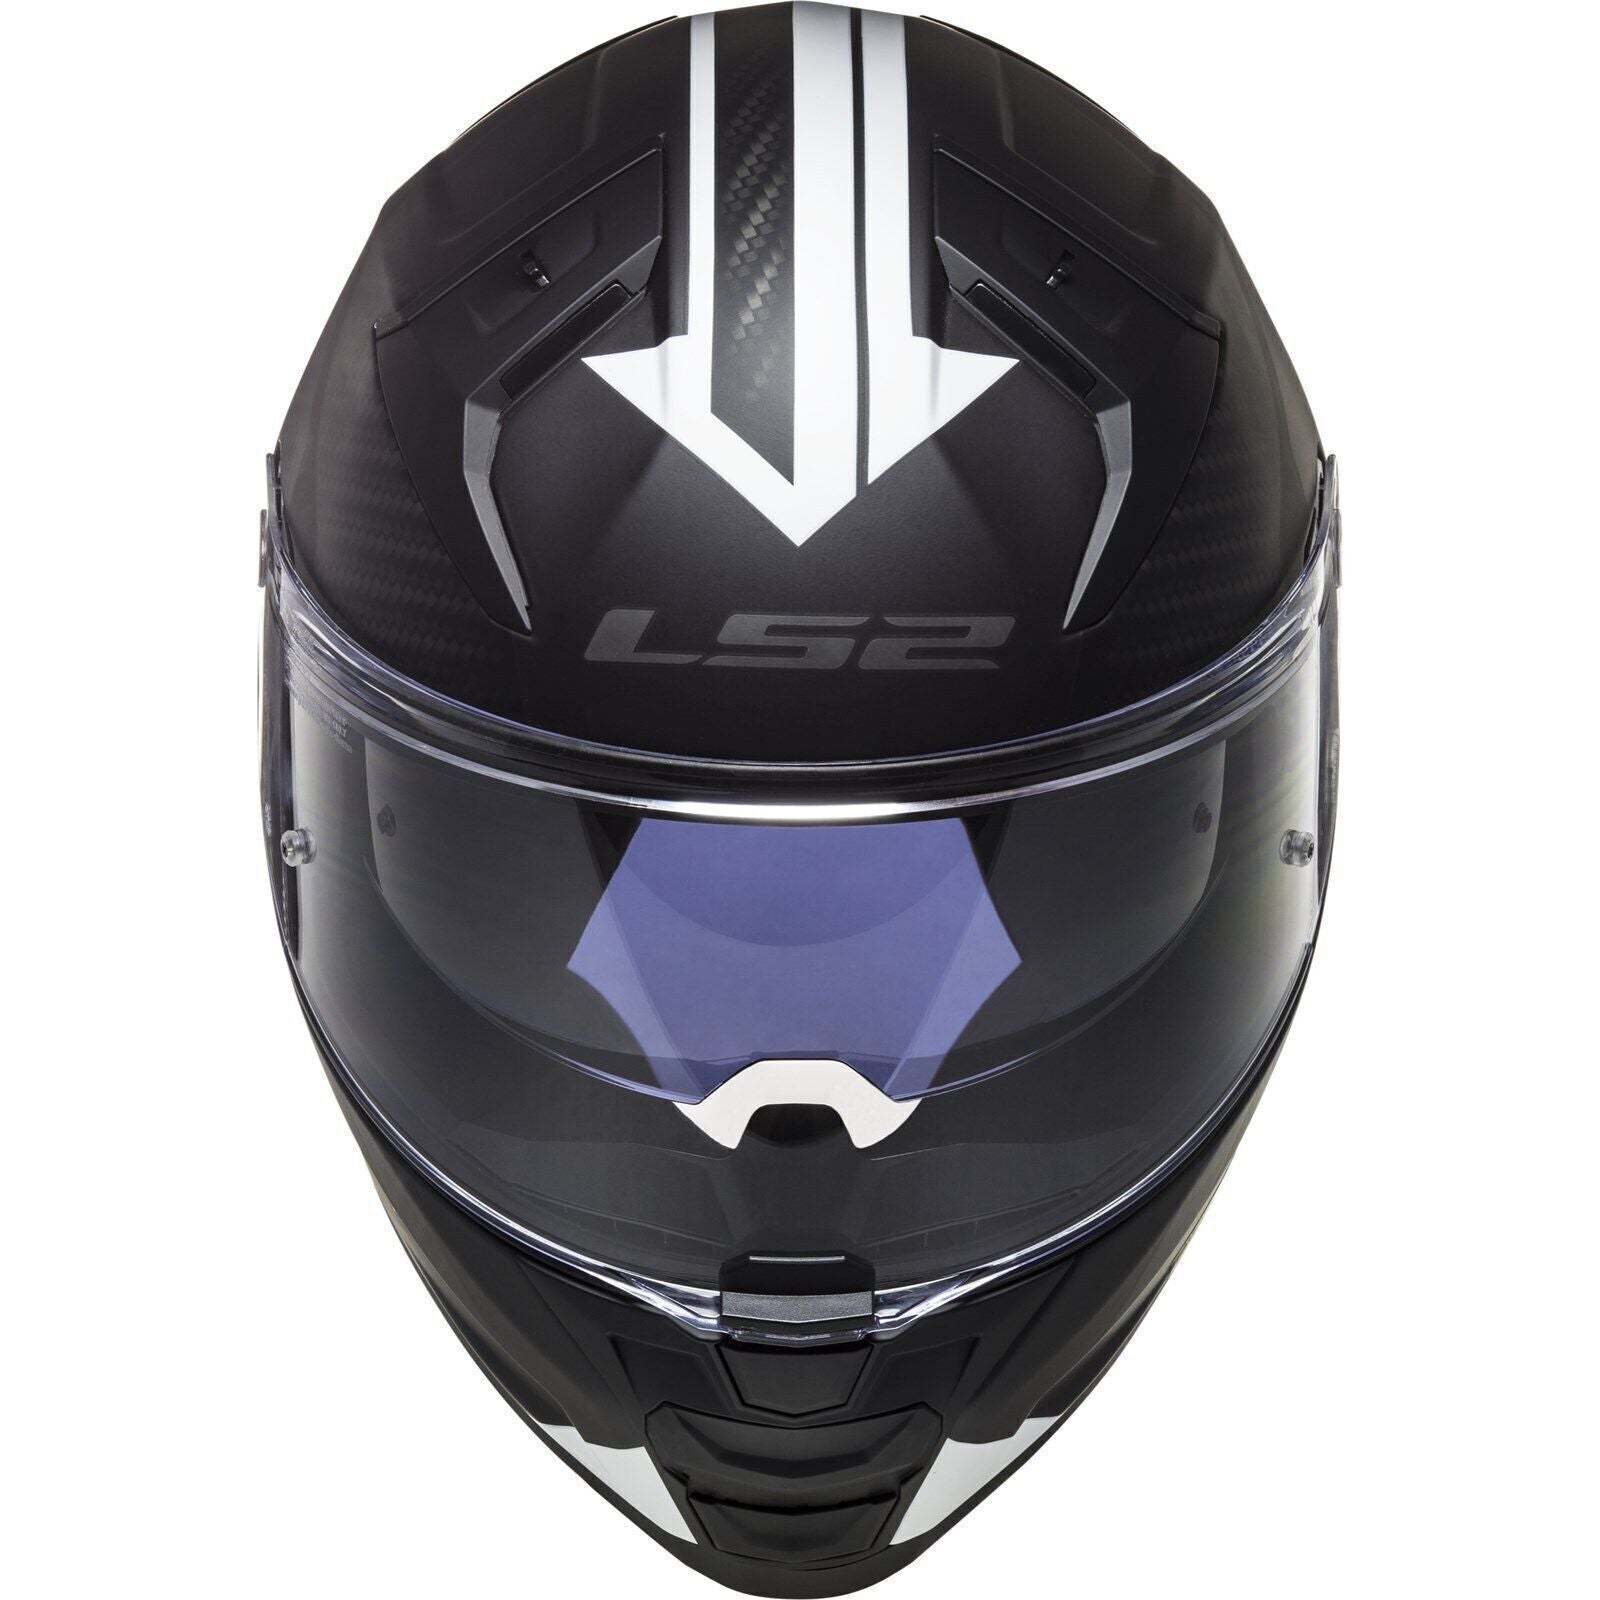 Riderwear | LS2 FF811 VECTOR II Full Face Helmet - SPLITTER Black White